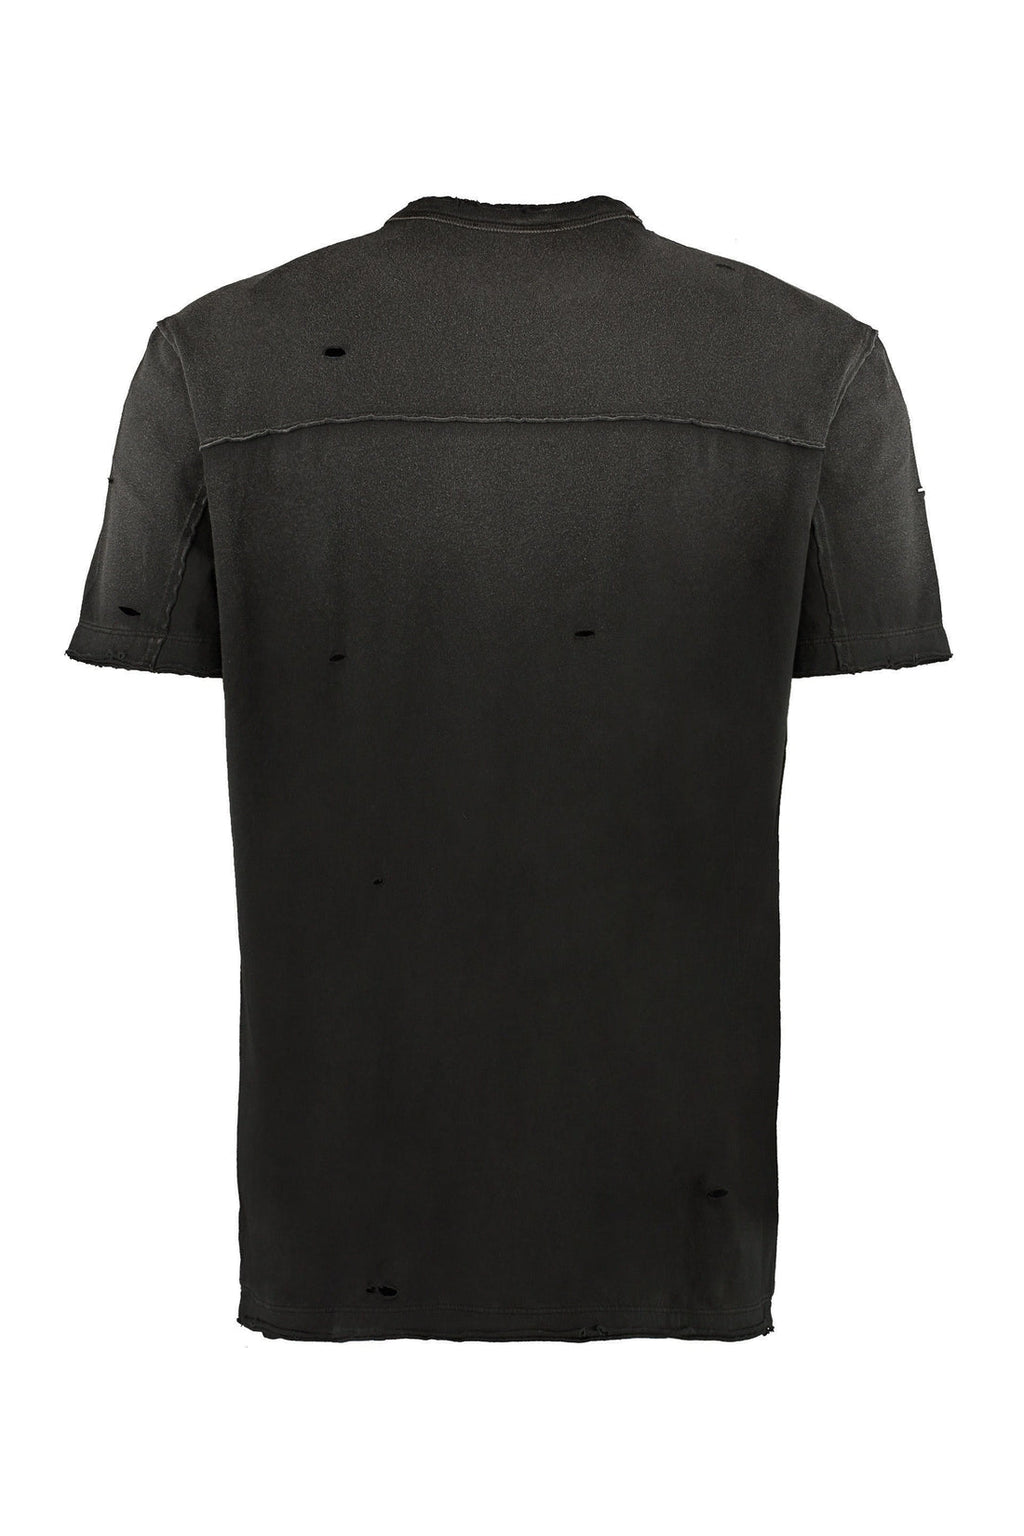 Dolce & Gabbana-OUTLET-SALE-Patch detail cotton t-shirt-ARCHIVIST